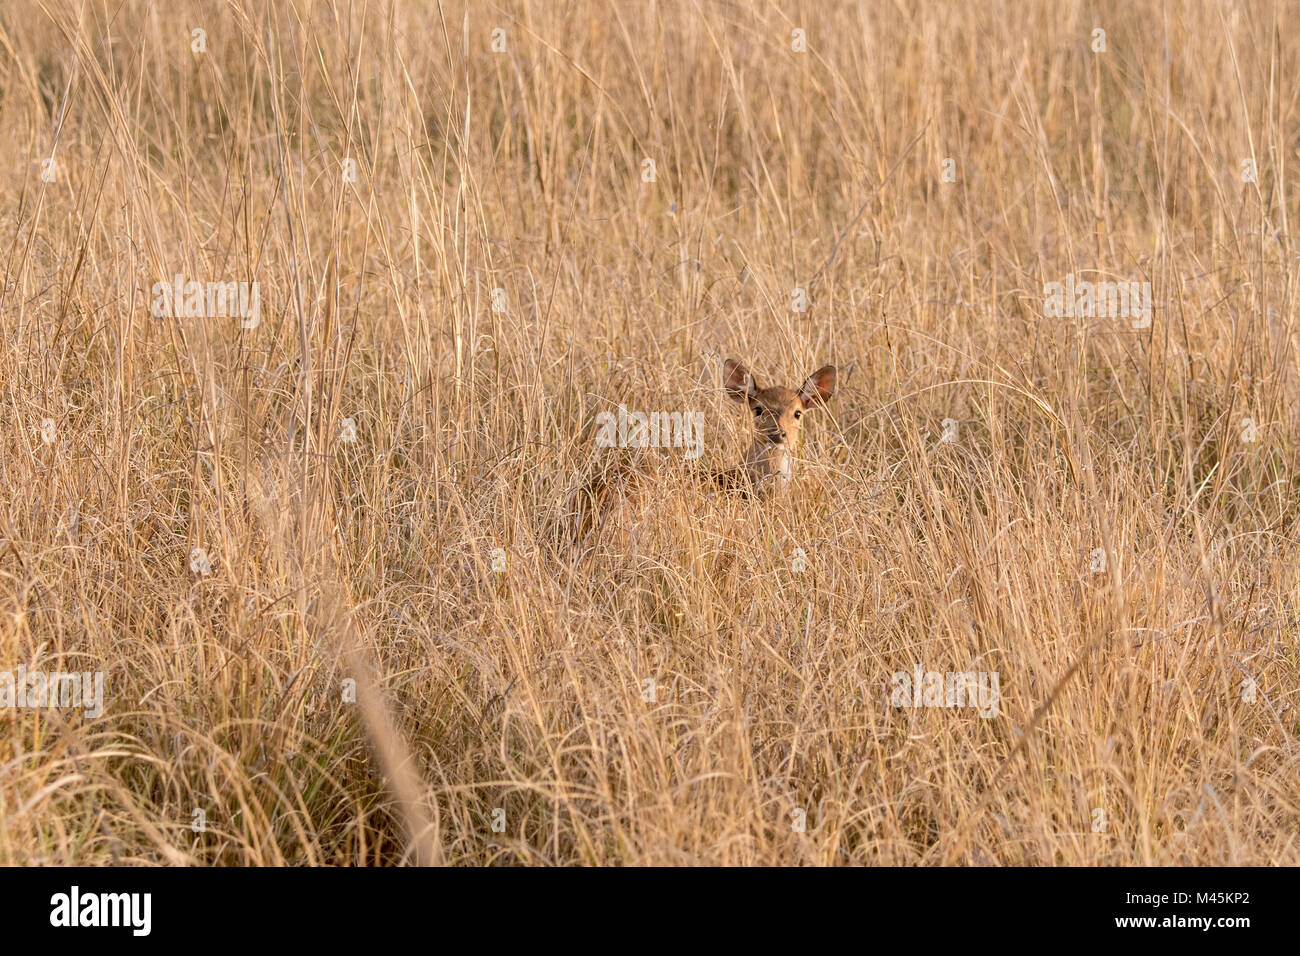 Les jeunes cerfs tachetés ou Chital sauvage fawn, Axis axis, se cachant dans l'herbe sèche dans Bandhavgarh National Park, Madhya Pradesh, Inde Banque D'Images